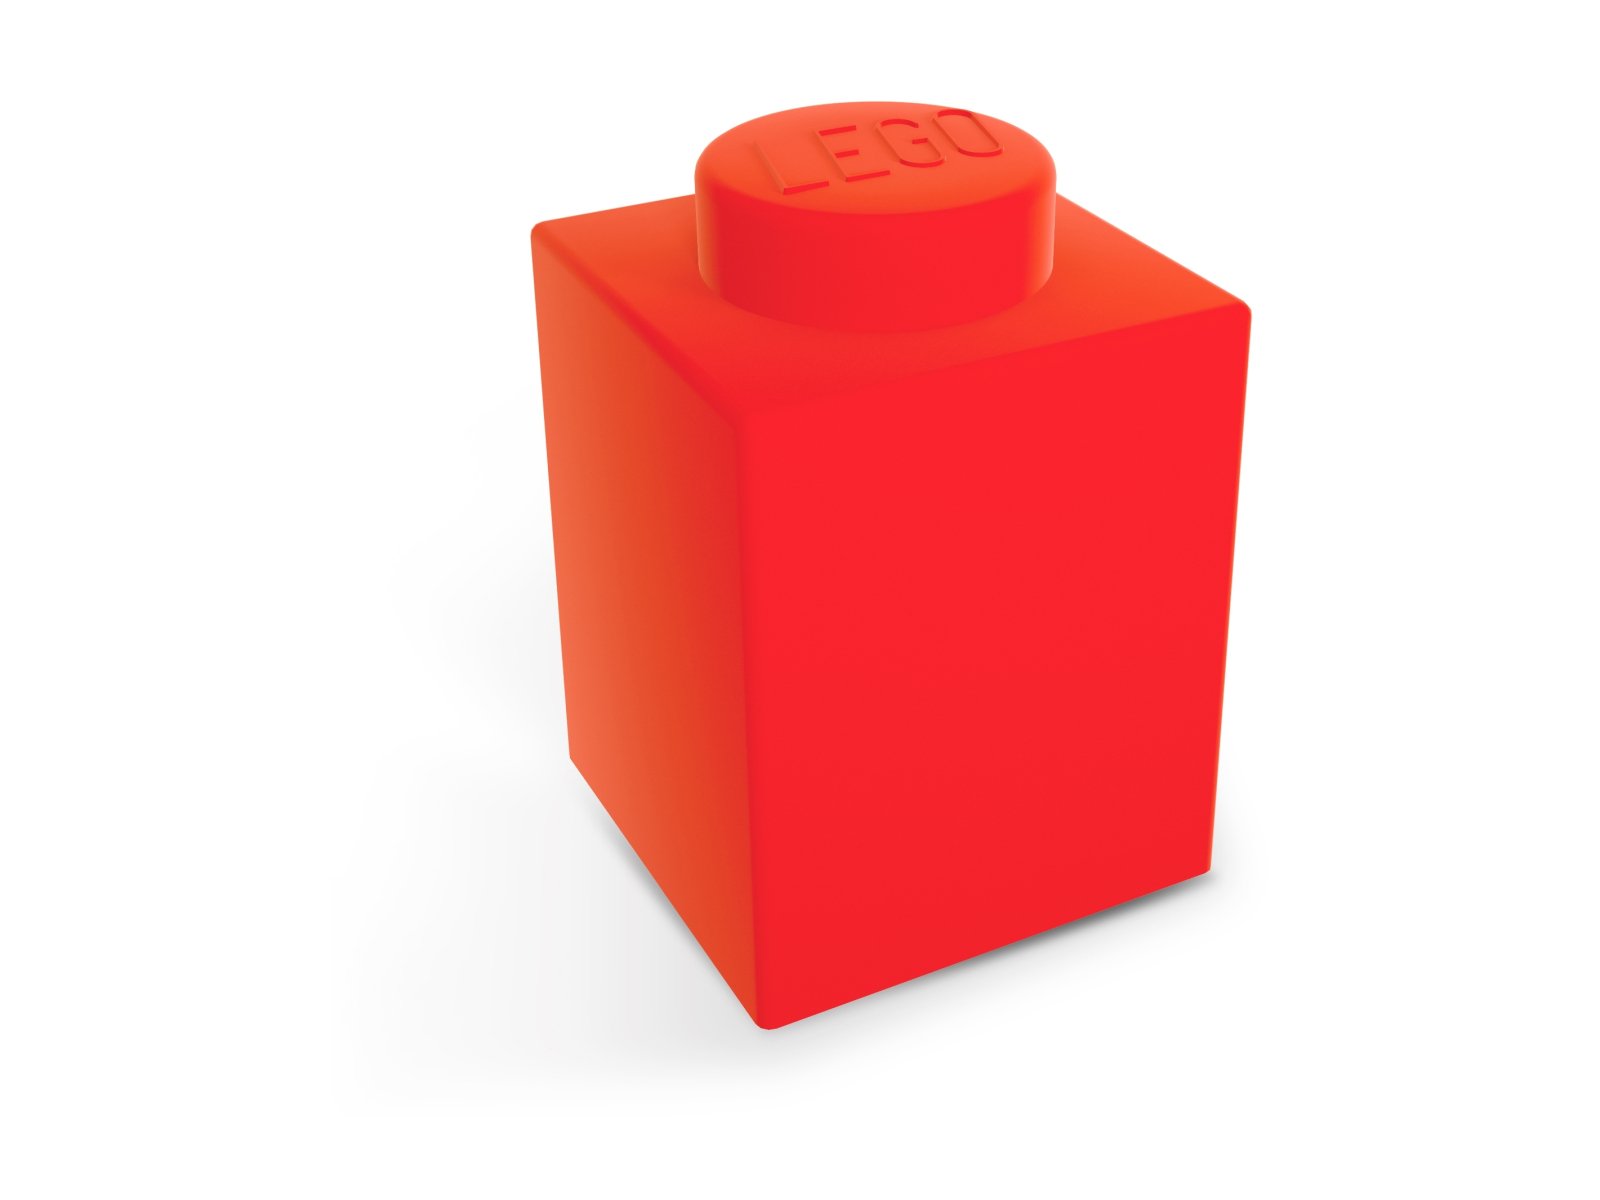 LEGO 5007231 Lampka nocna w kształcie klocka 1 × 1 — czerwona